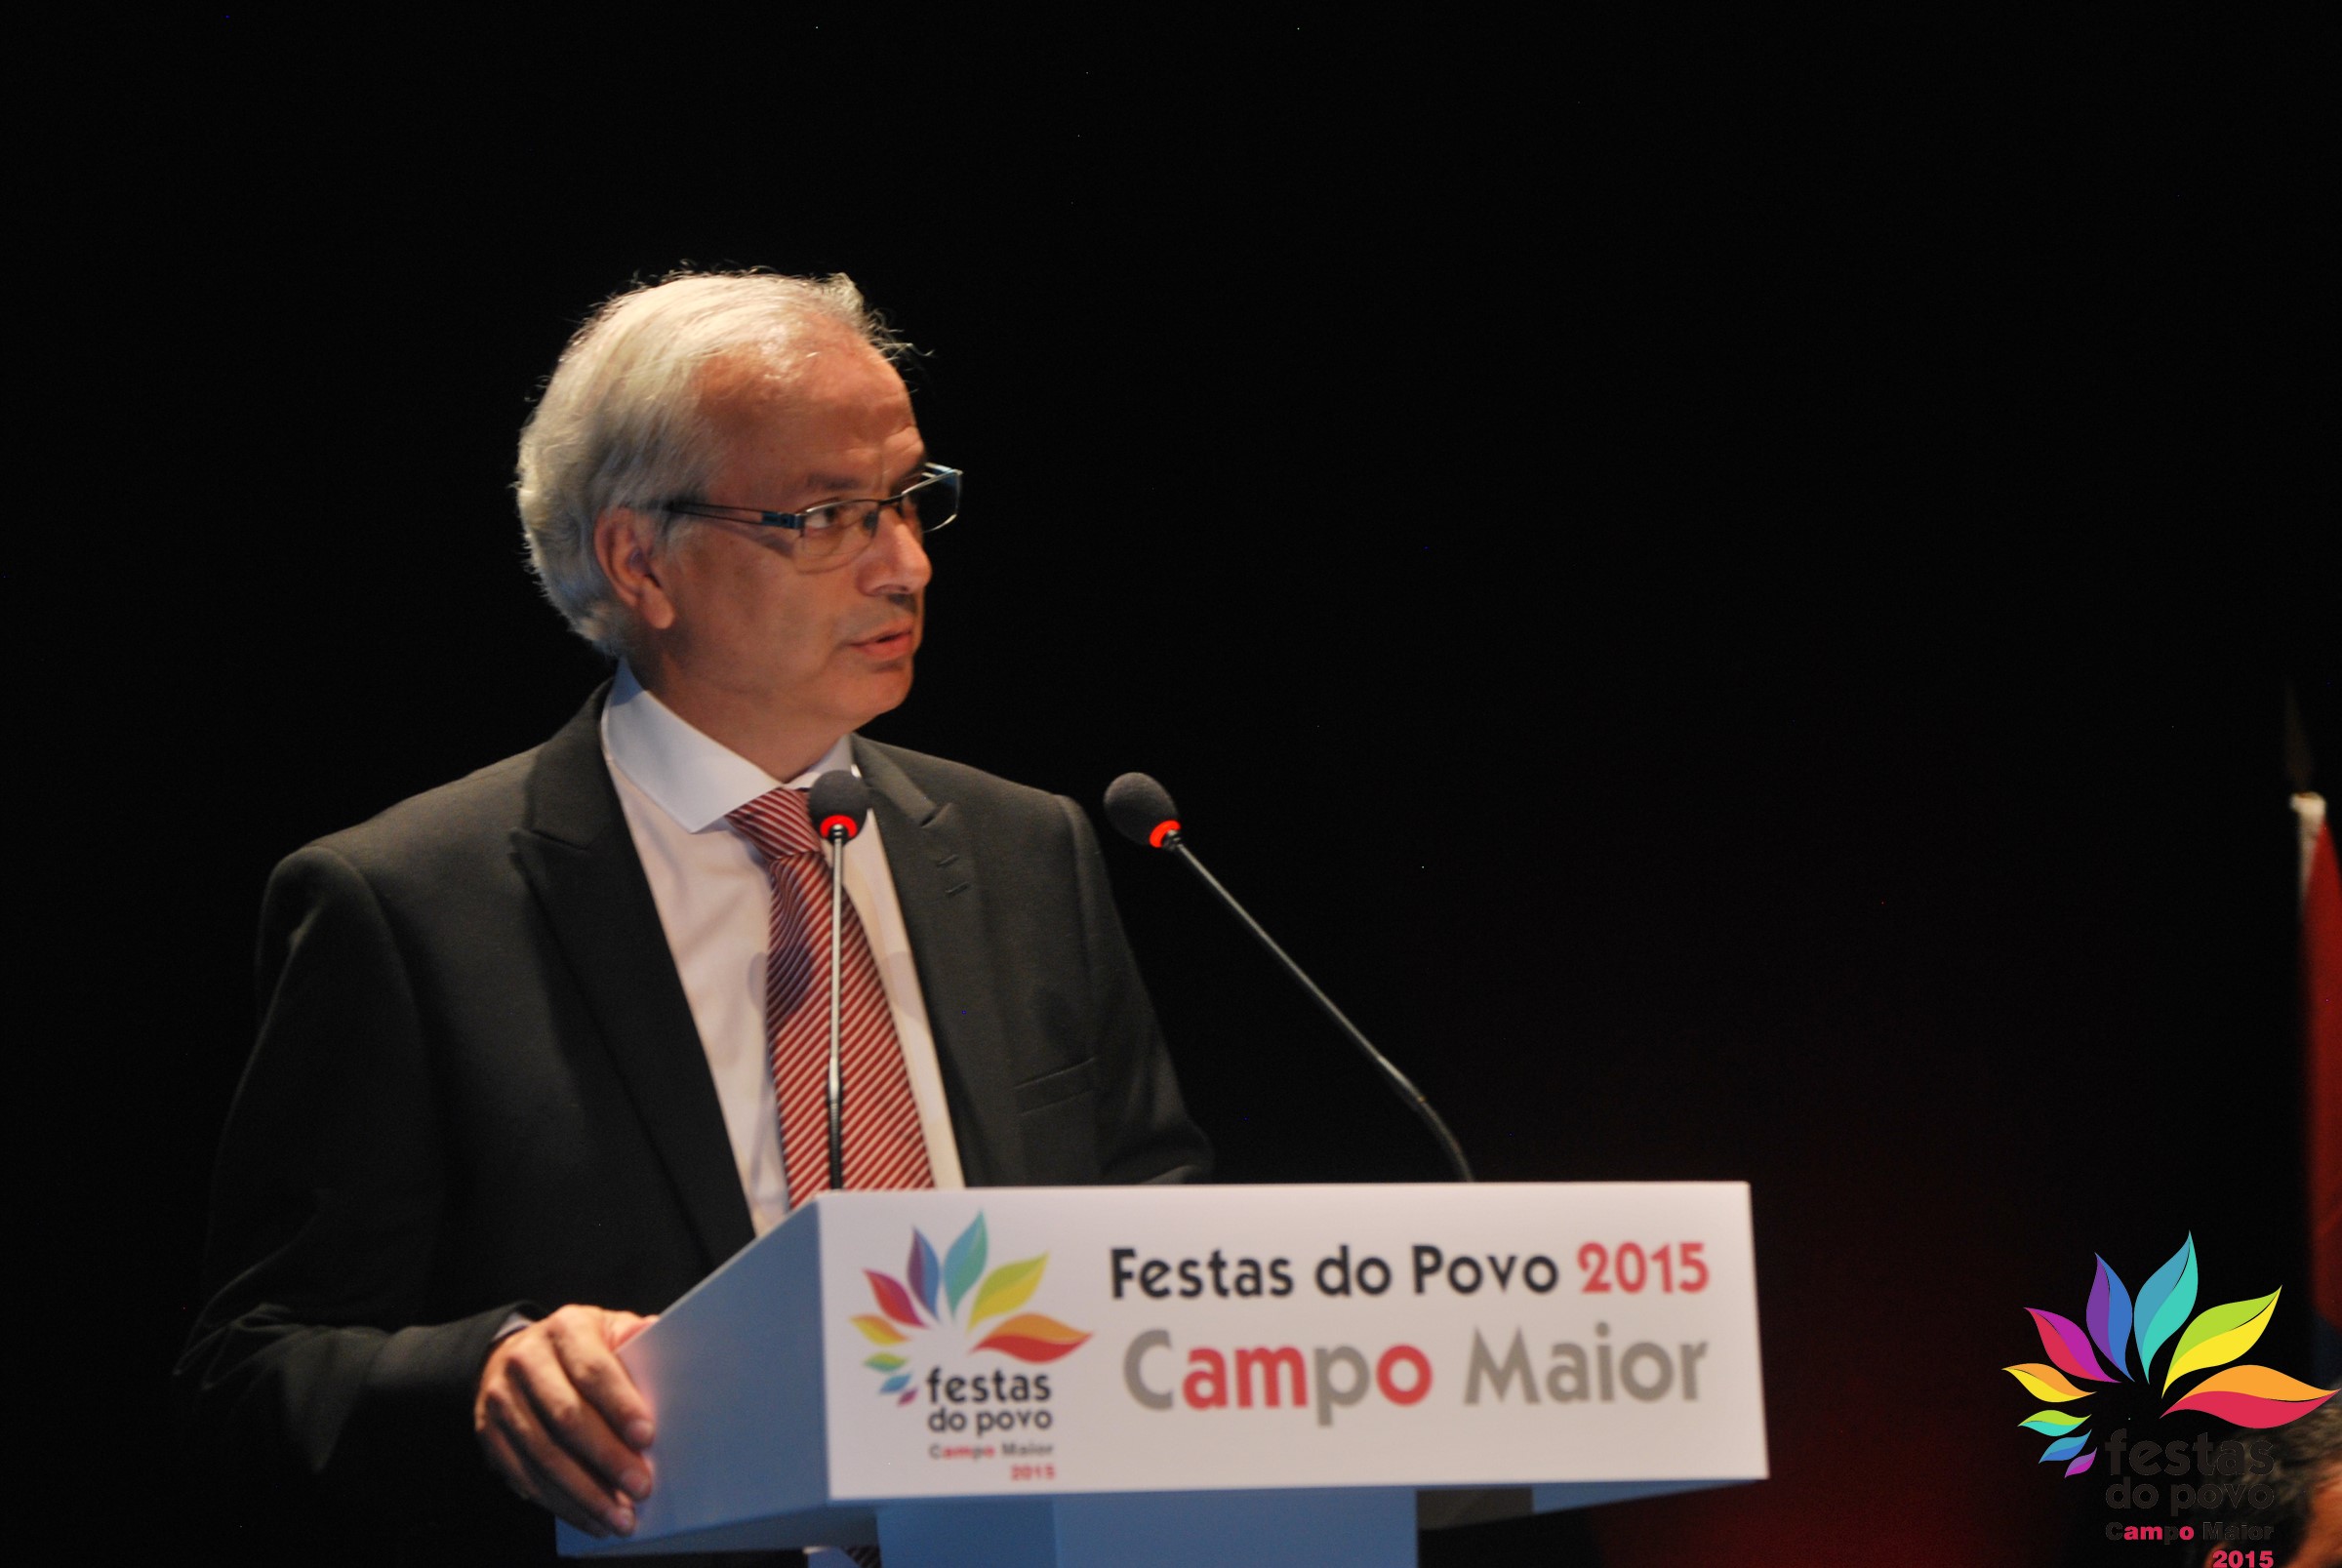 João rosinha, Presidente da Associação das Festas do Povo de Campo Maior